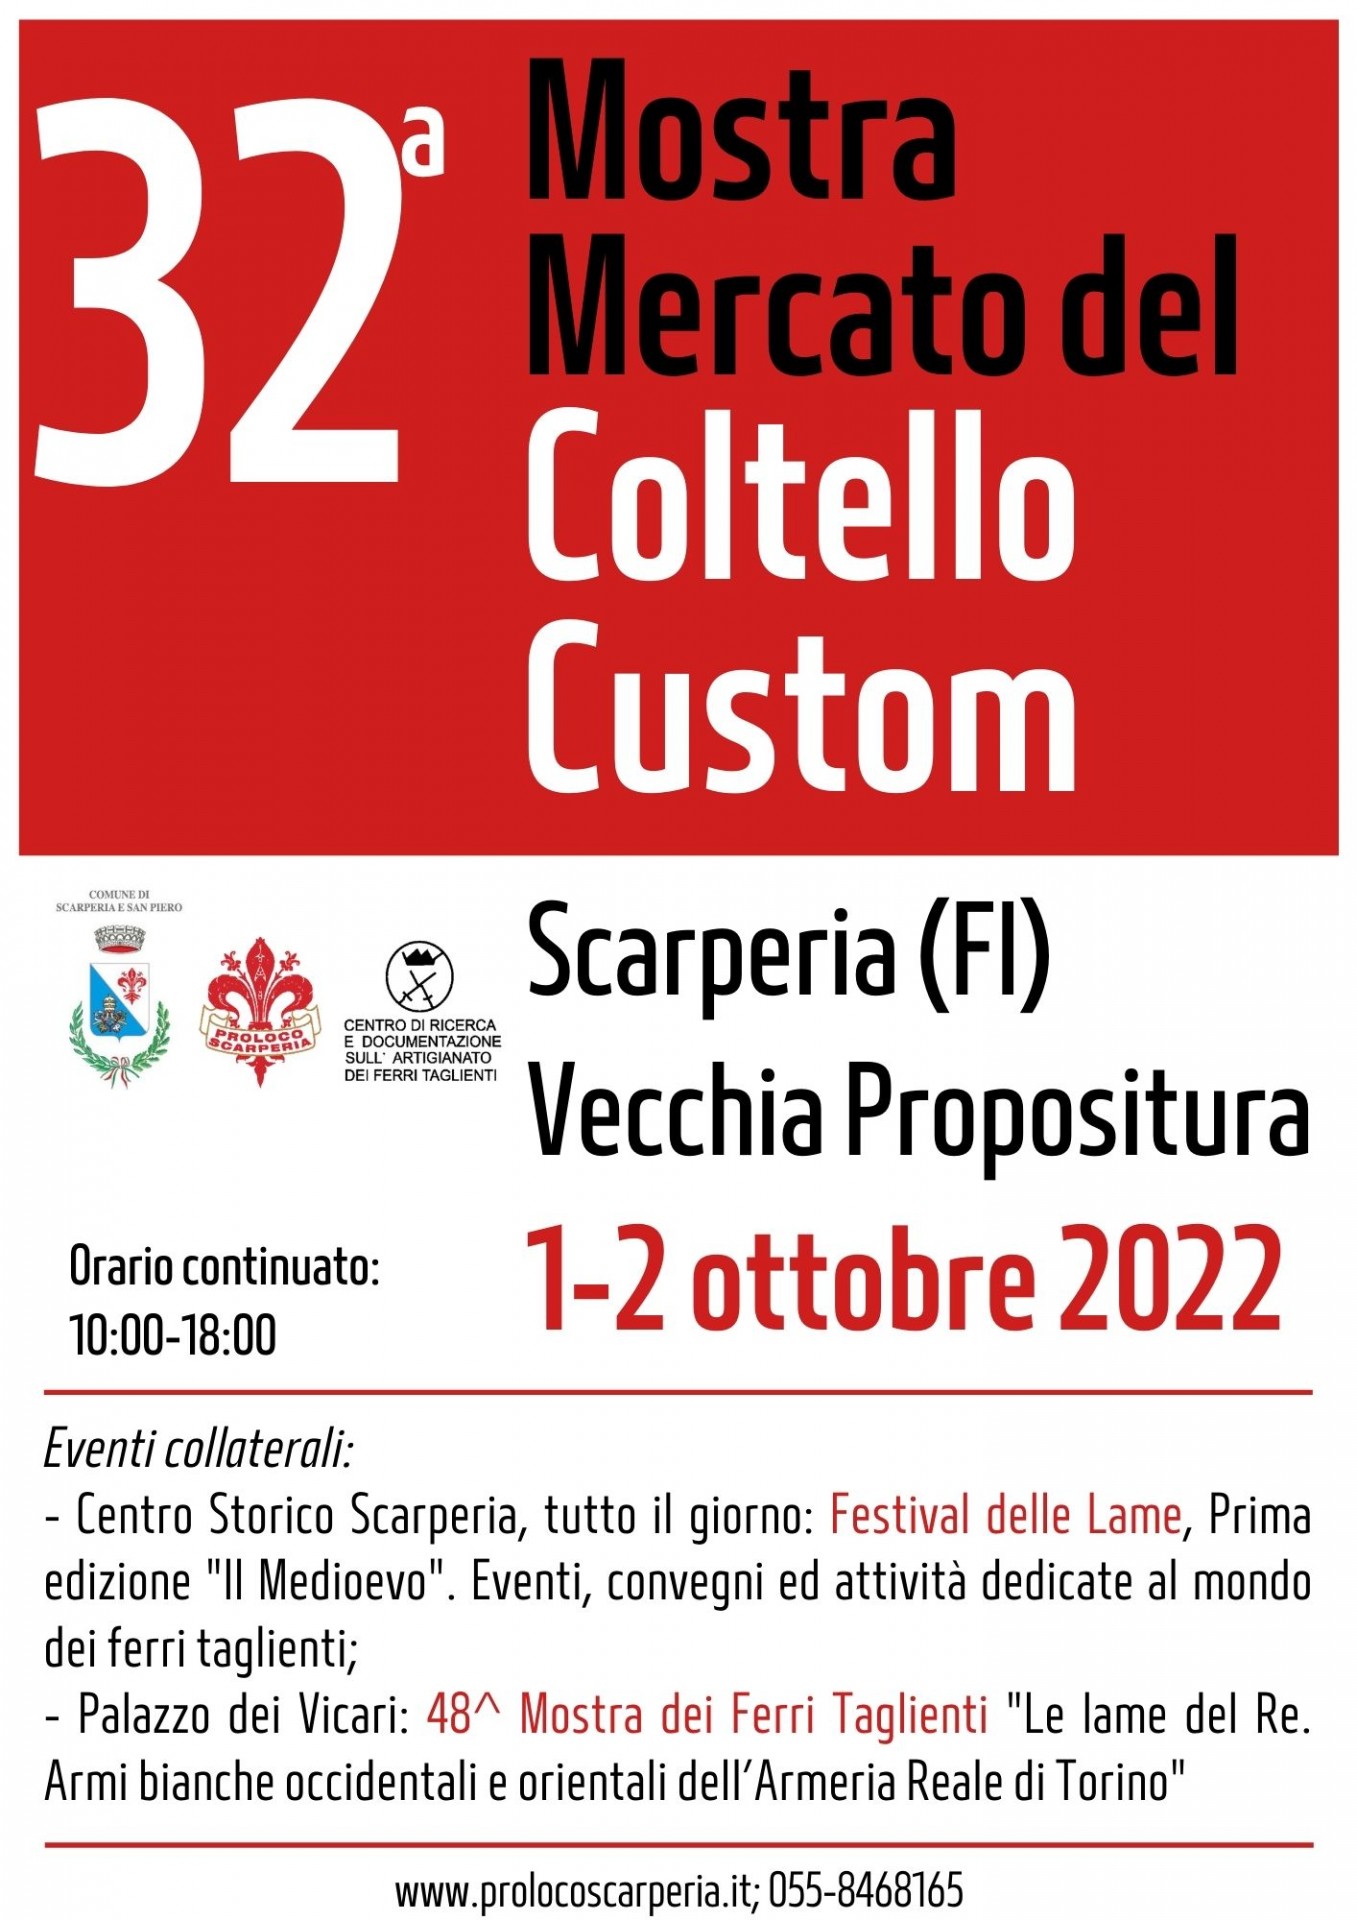 Locandina della Mostra Mercato del Coltello Custom a Scarperia, edizione 2016